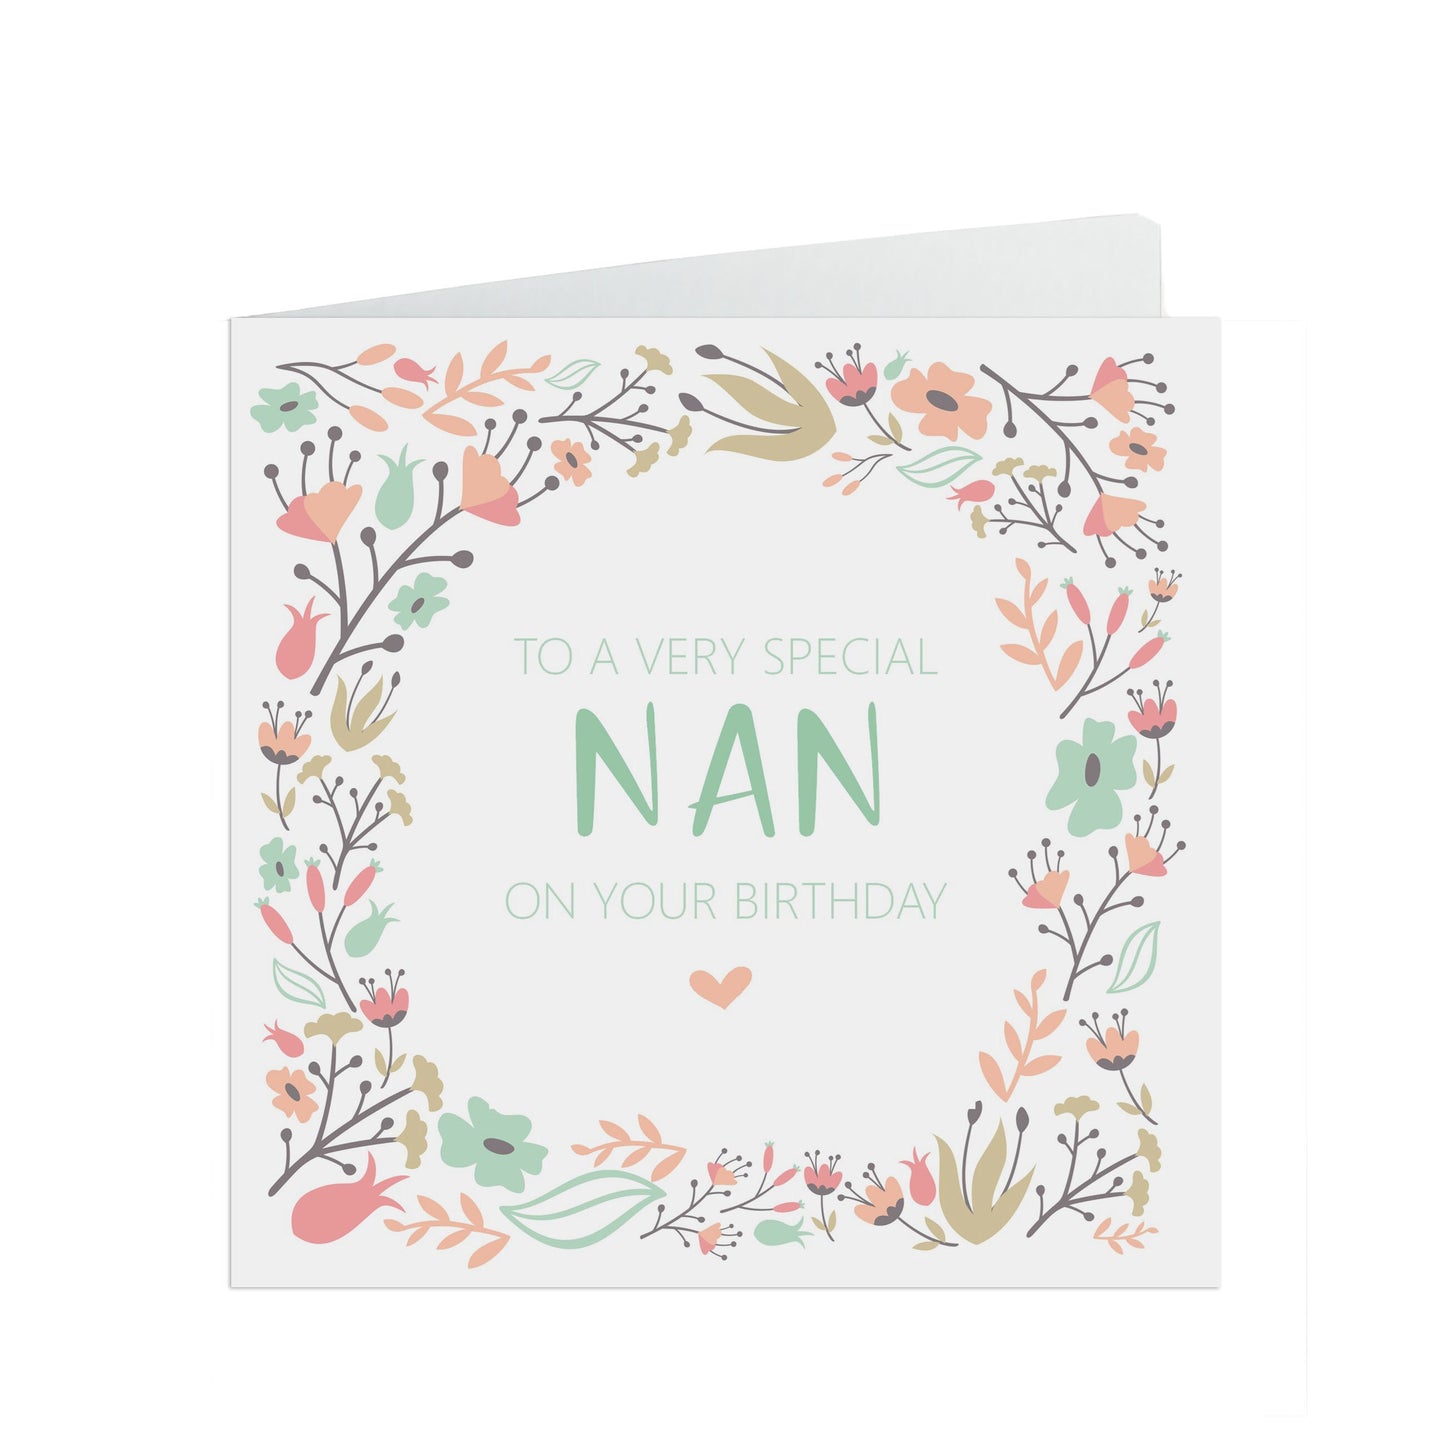 Nan Birthday Card, Sage & Peach Flower Design